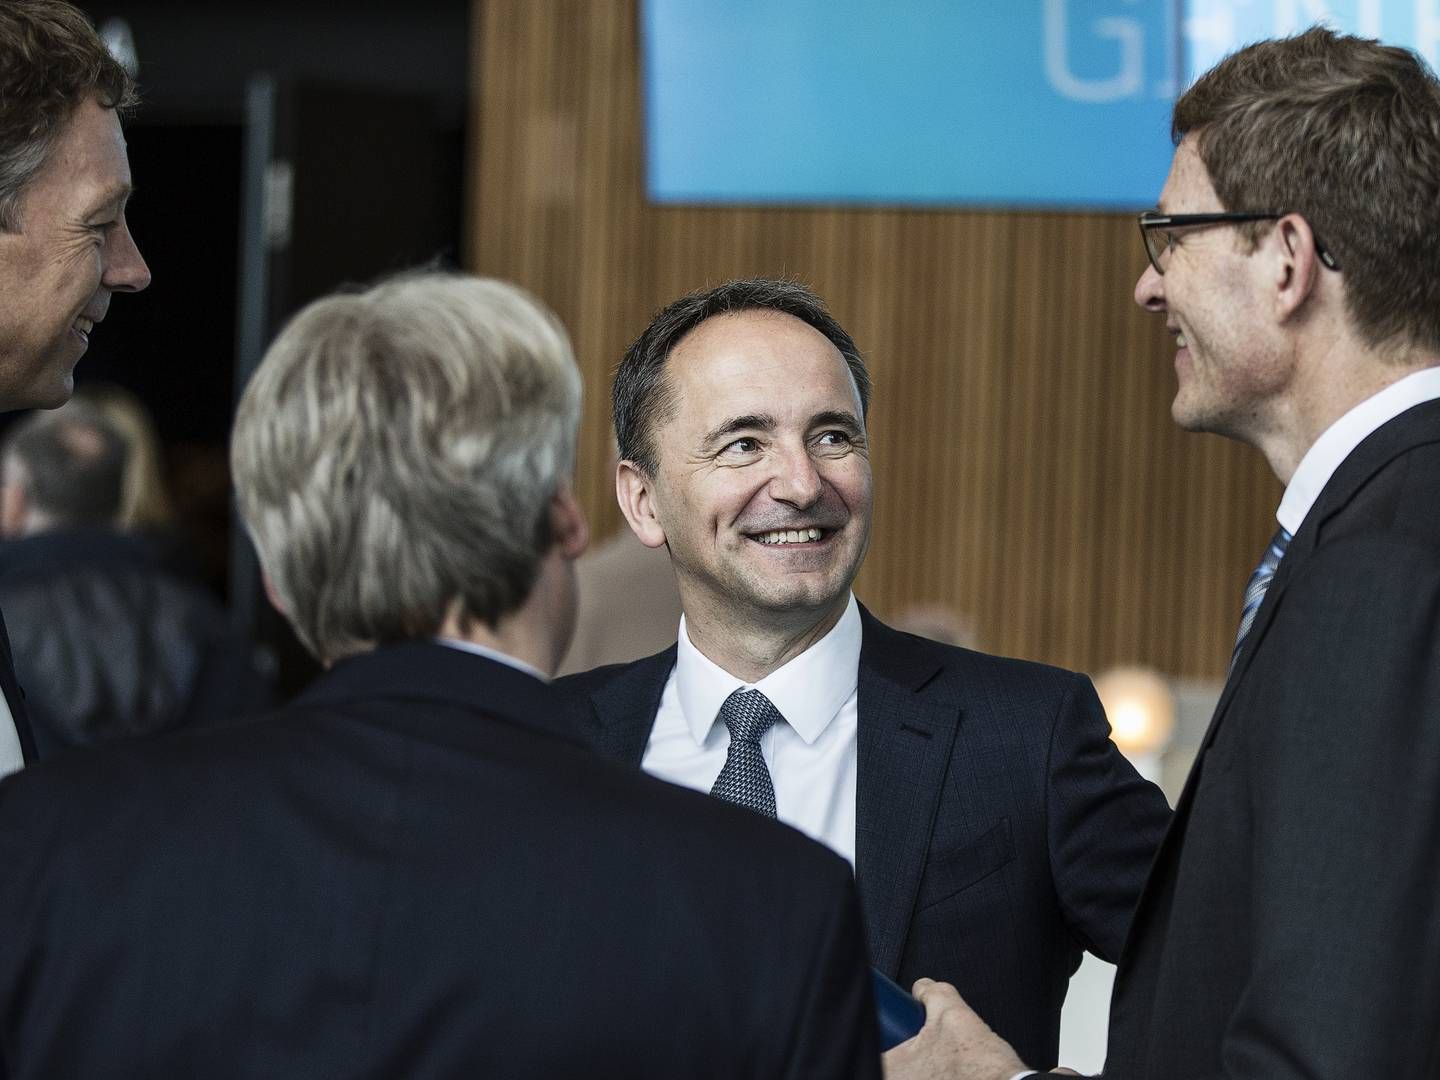 JIm Hagemann Snabe, der er bestyrelsesformand for A.P. Møller - Mærsk og Siemens, kommer til at stå i spidsen for digitaliseringspartnerskab. | Foto: Niels Hougaard/ERH